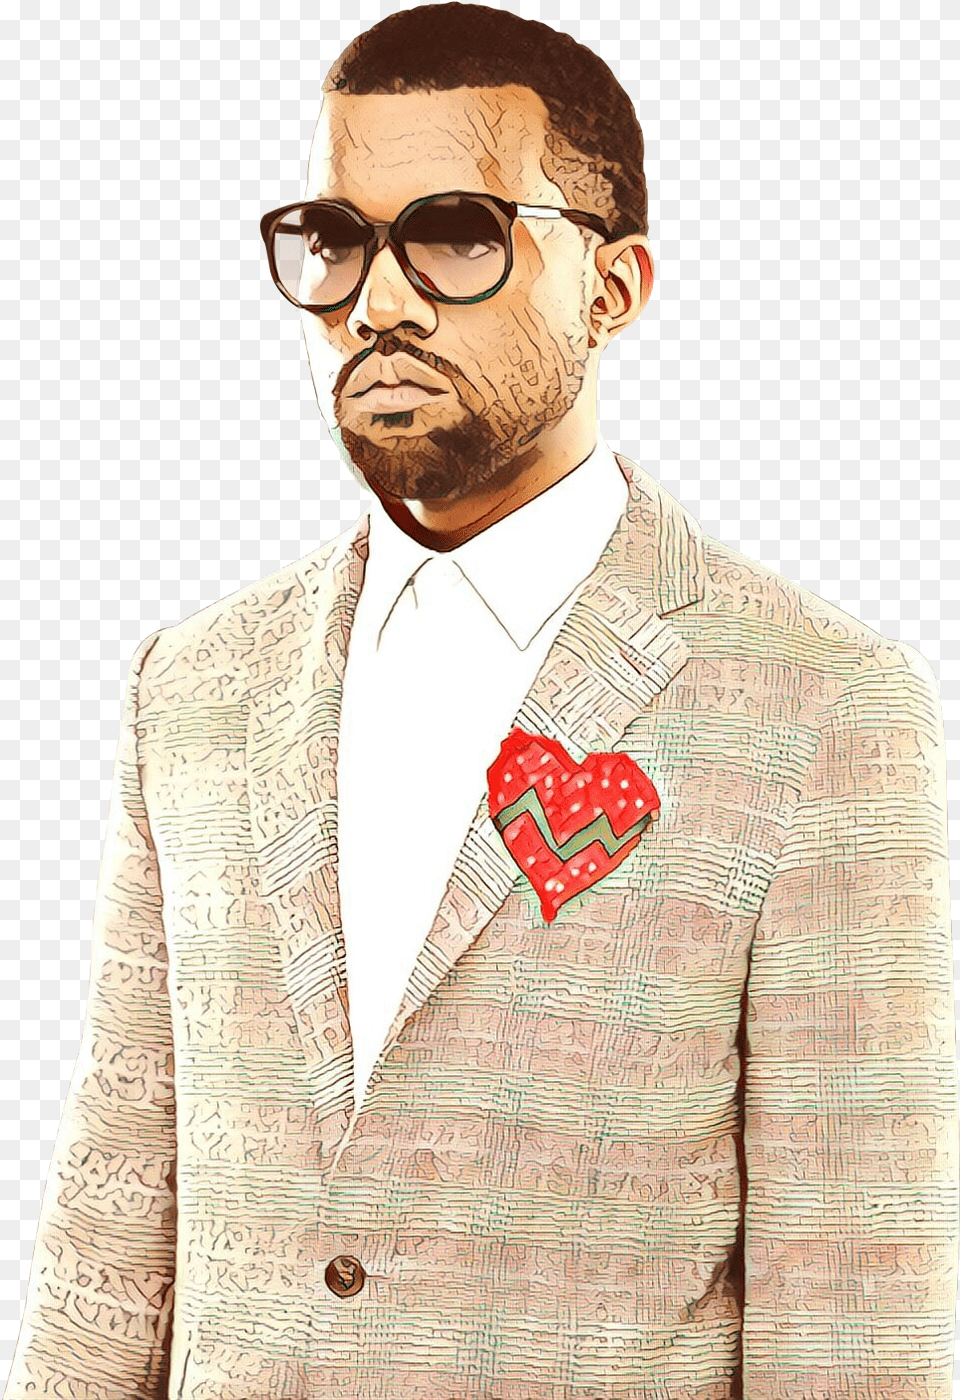 Kanye West 808s U0026 Heartbreak Hip Hop Music Moustache Singer Kanye West 808s Heartbreak, Accessories, Sunglasses, Suit, Person Png